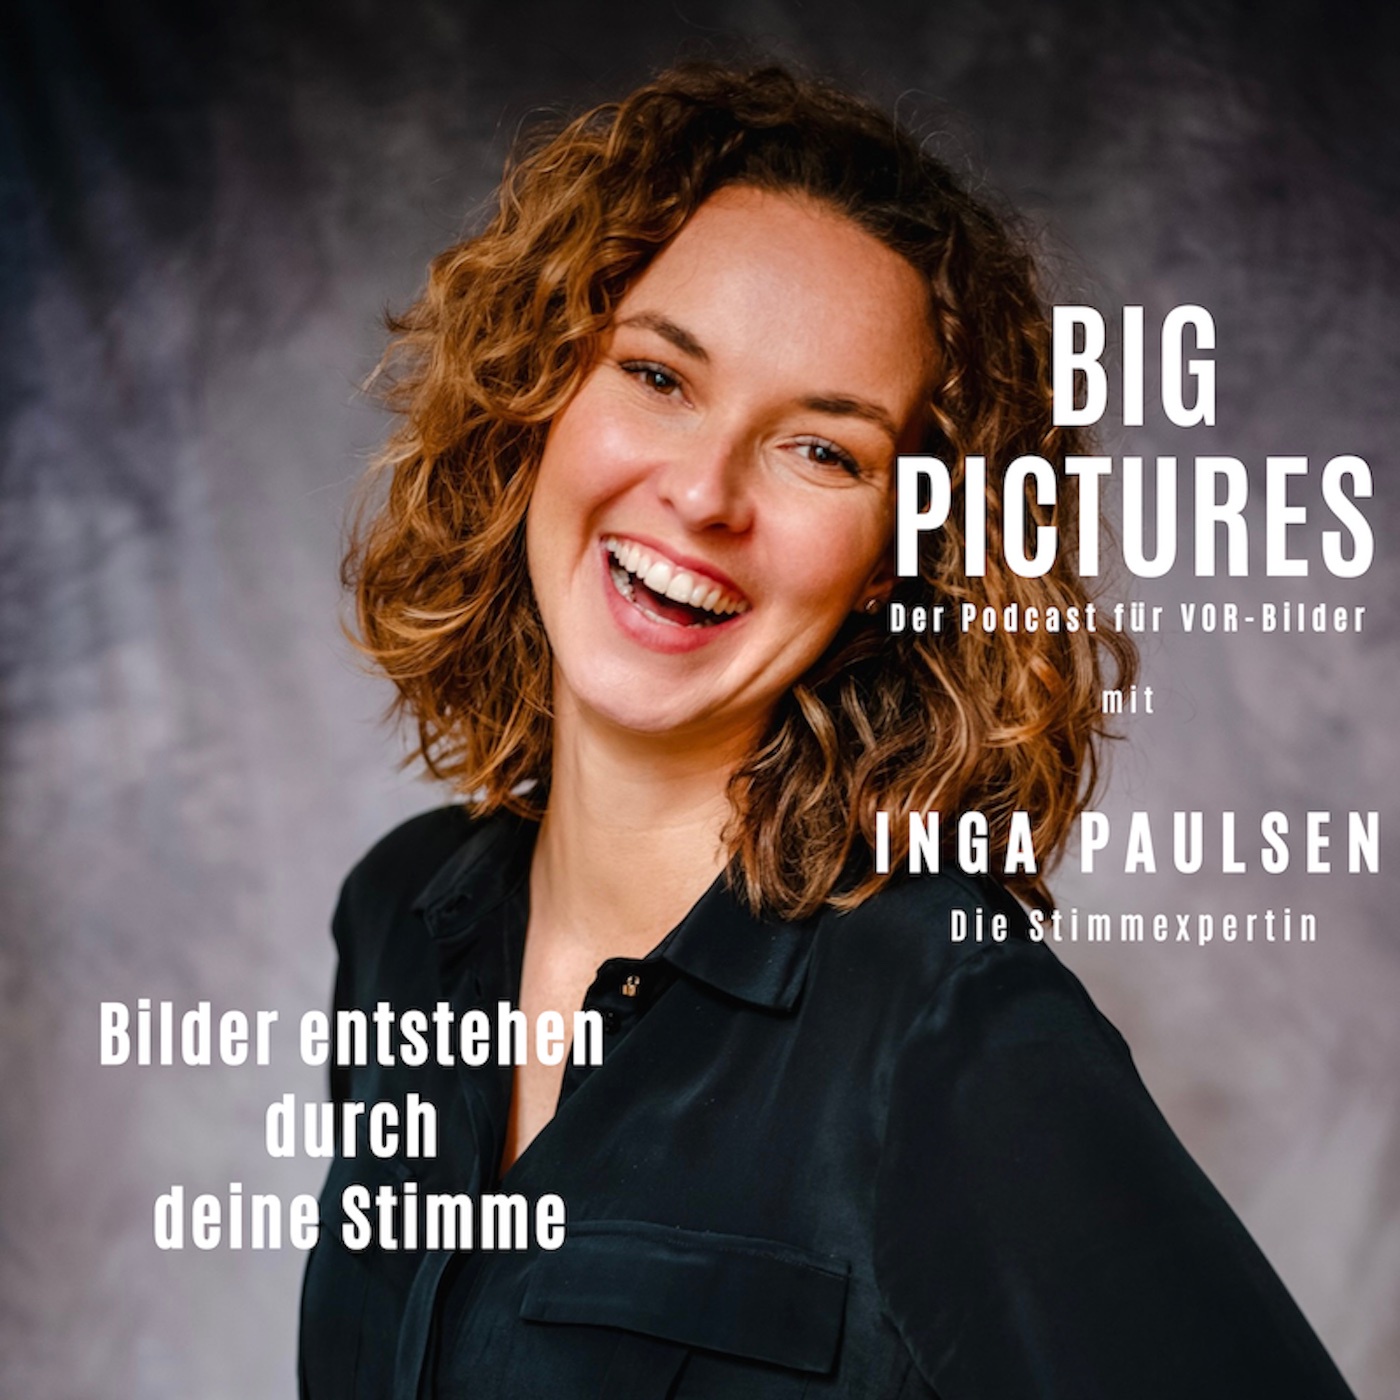 Inga Paulsen: Das erste Bild über dich entsteht über deine Stimme.